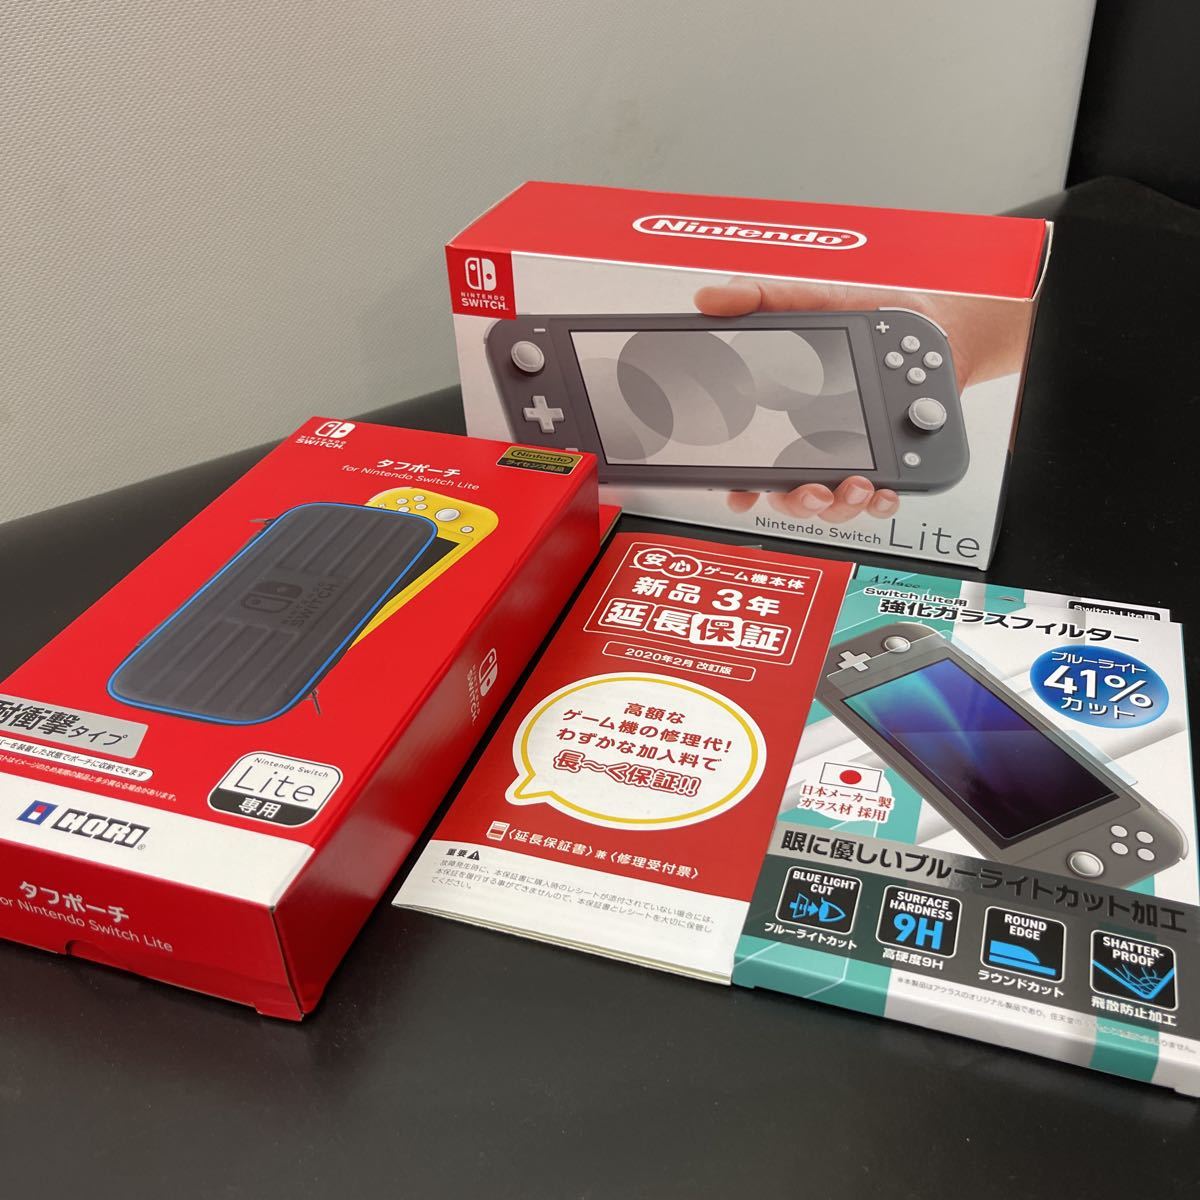 【新品未使用品】保証付 任天堂 Nintendo Switch Lite 本体セット グレー スイッチライト 新品タフポーチ 強化ガラスフィルター付